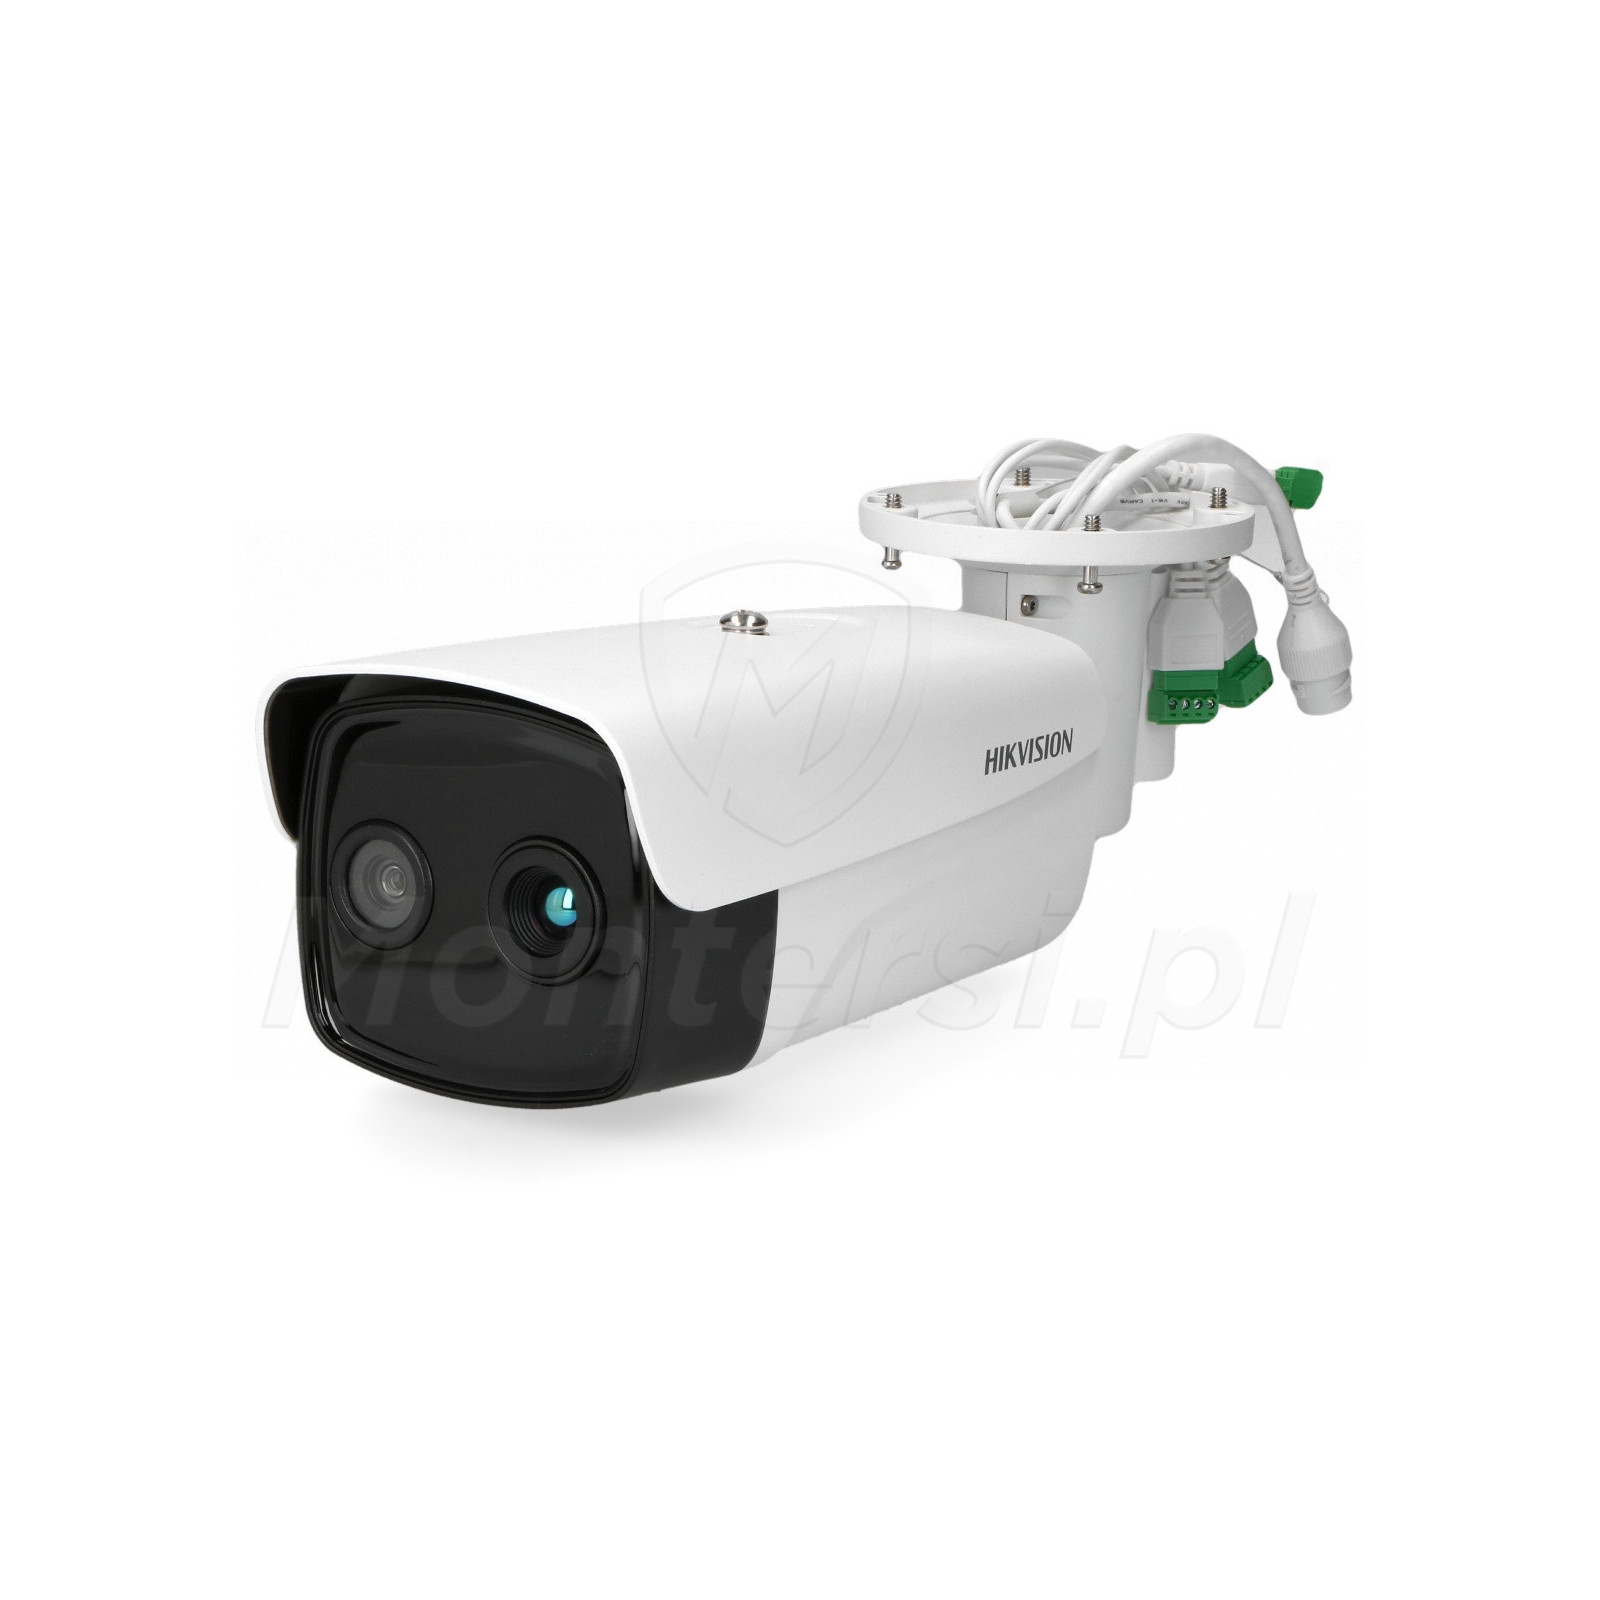 Kamera bispektralna DS-2TD2636B-15/P